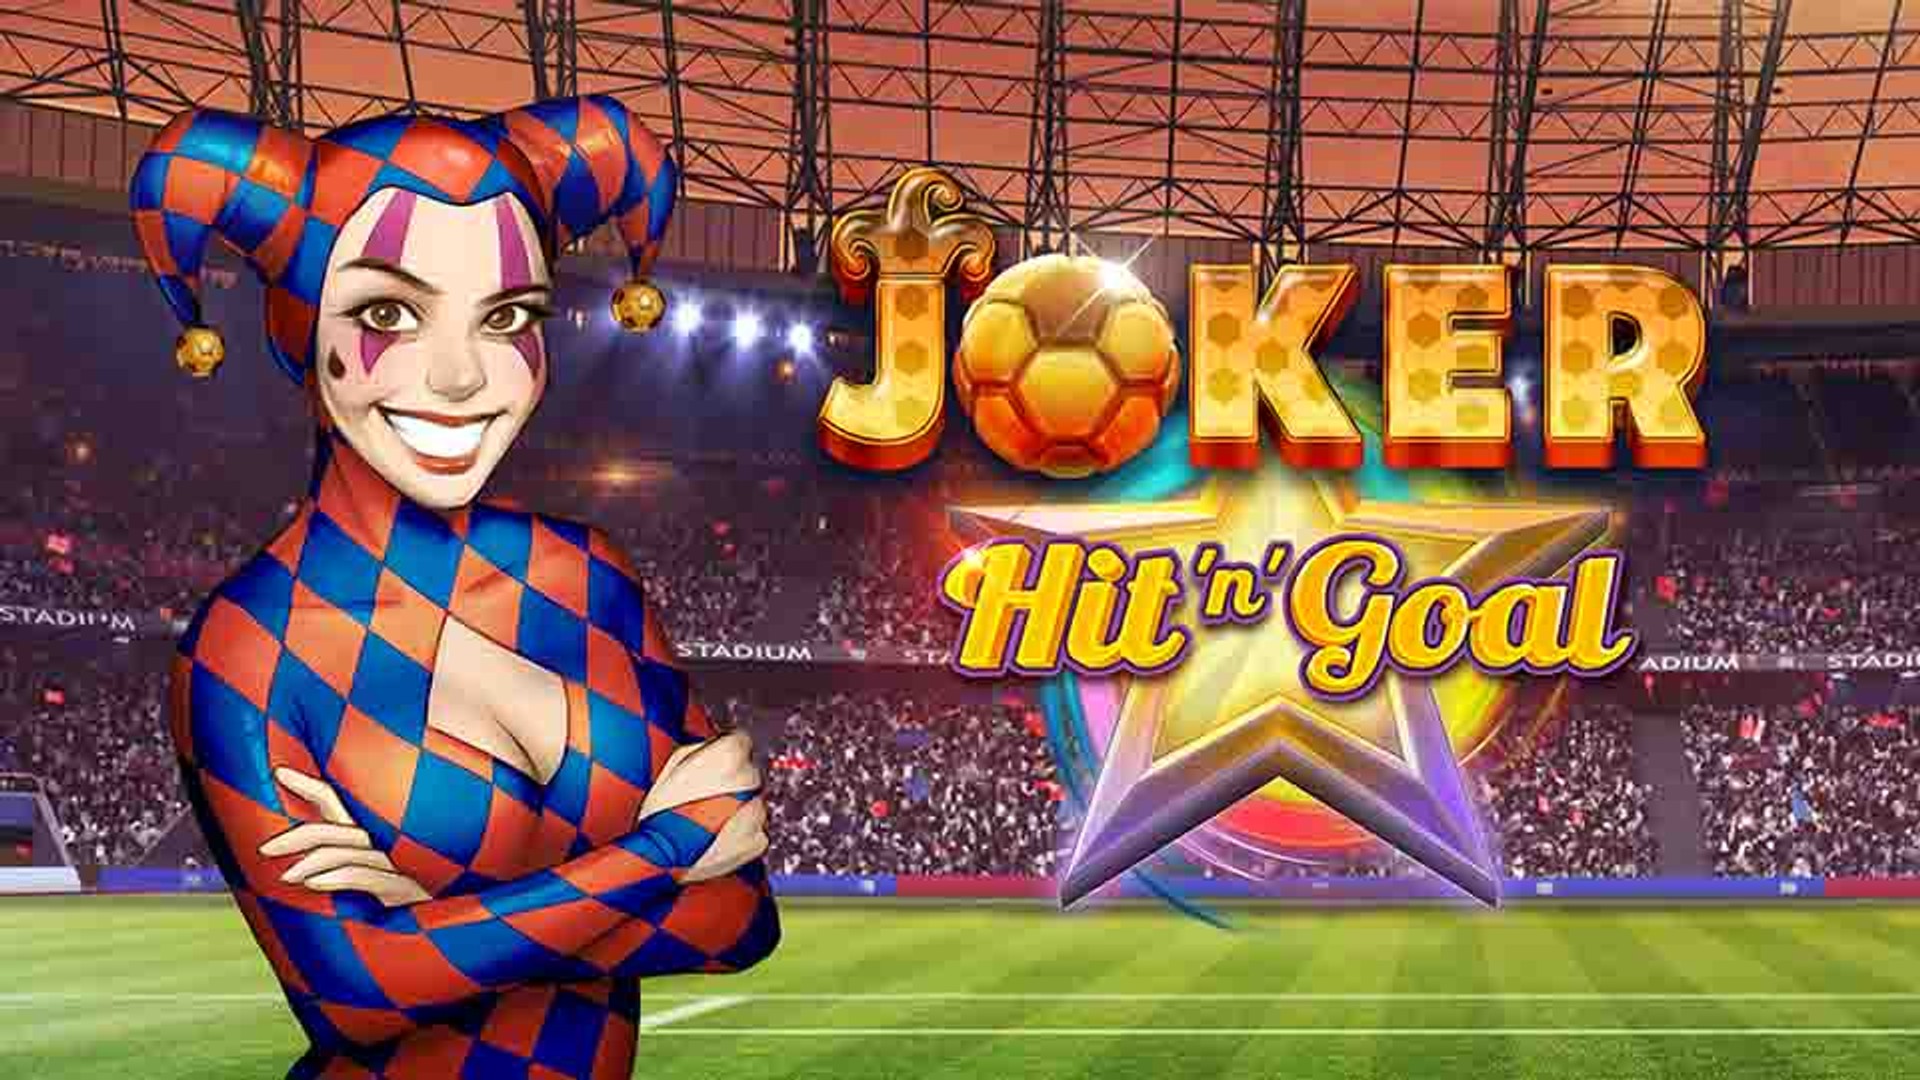 Joker Hit 'n' Goal